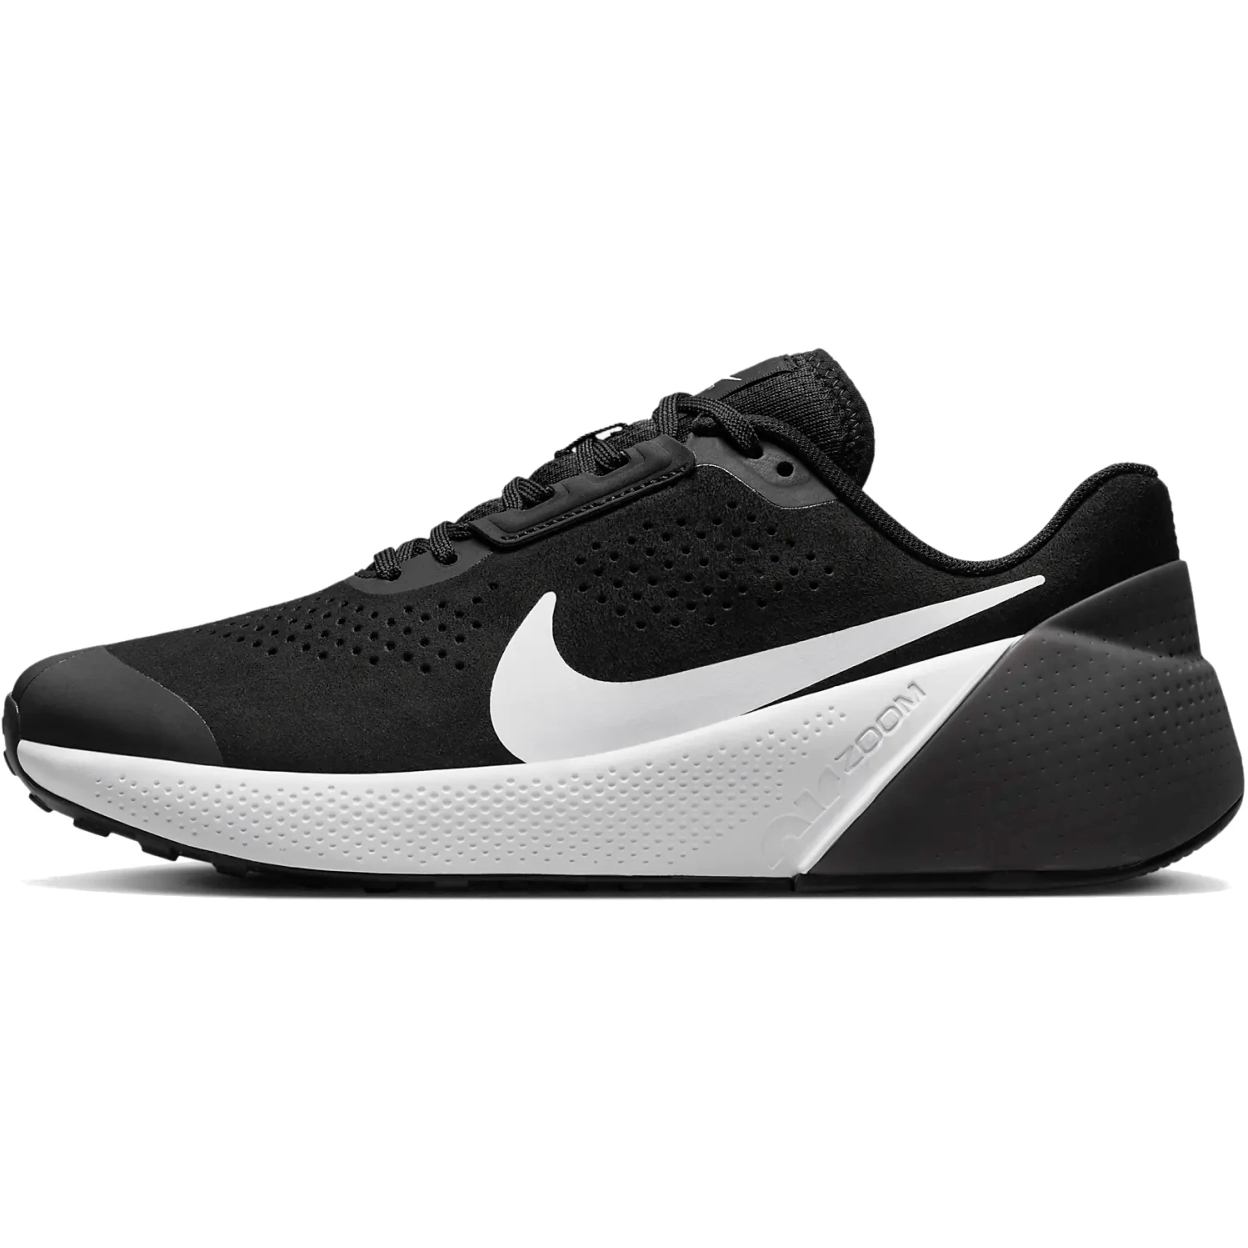 Immagine di Nike Scarpe da fitness Uomo - Air Zoom TR 1 - black/anthracite/white DX9016-002